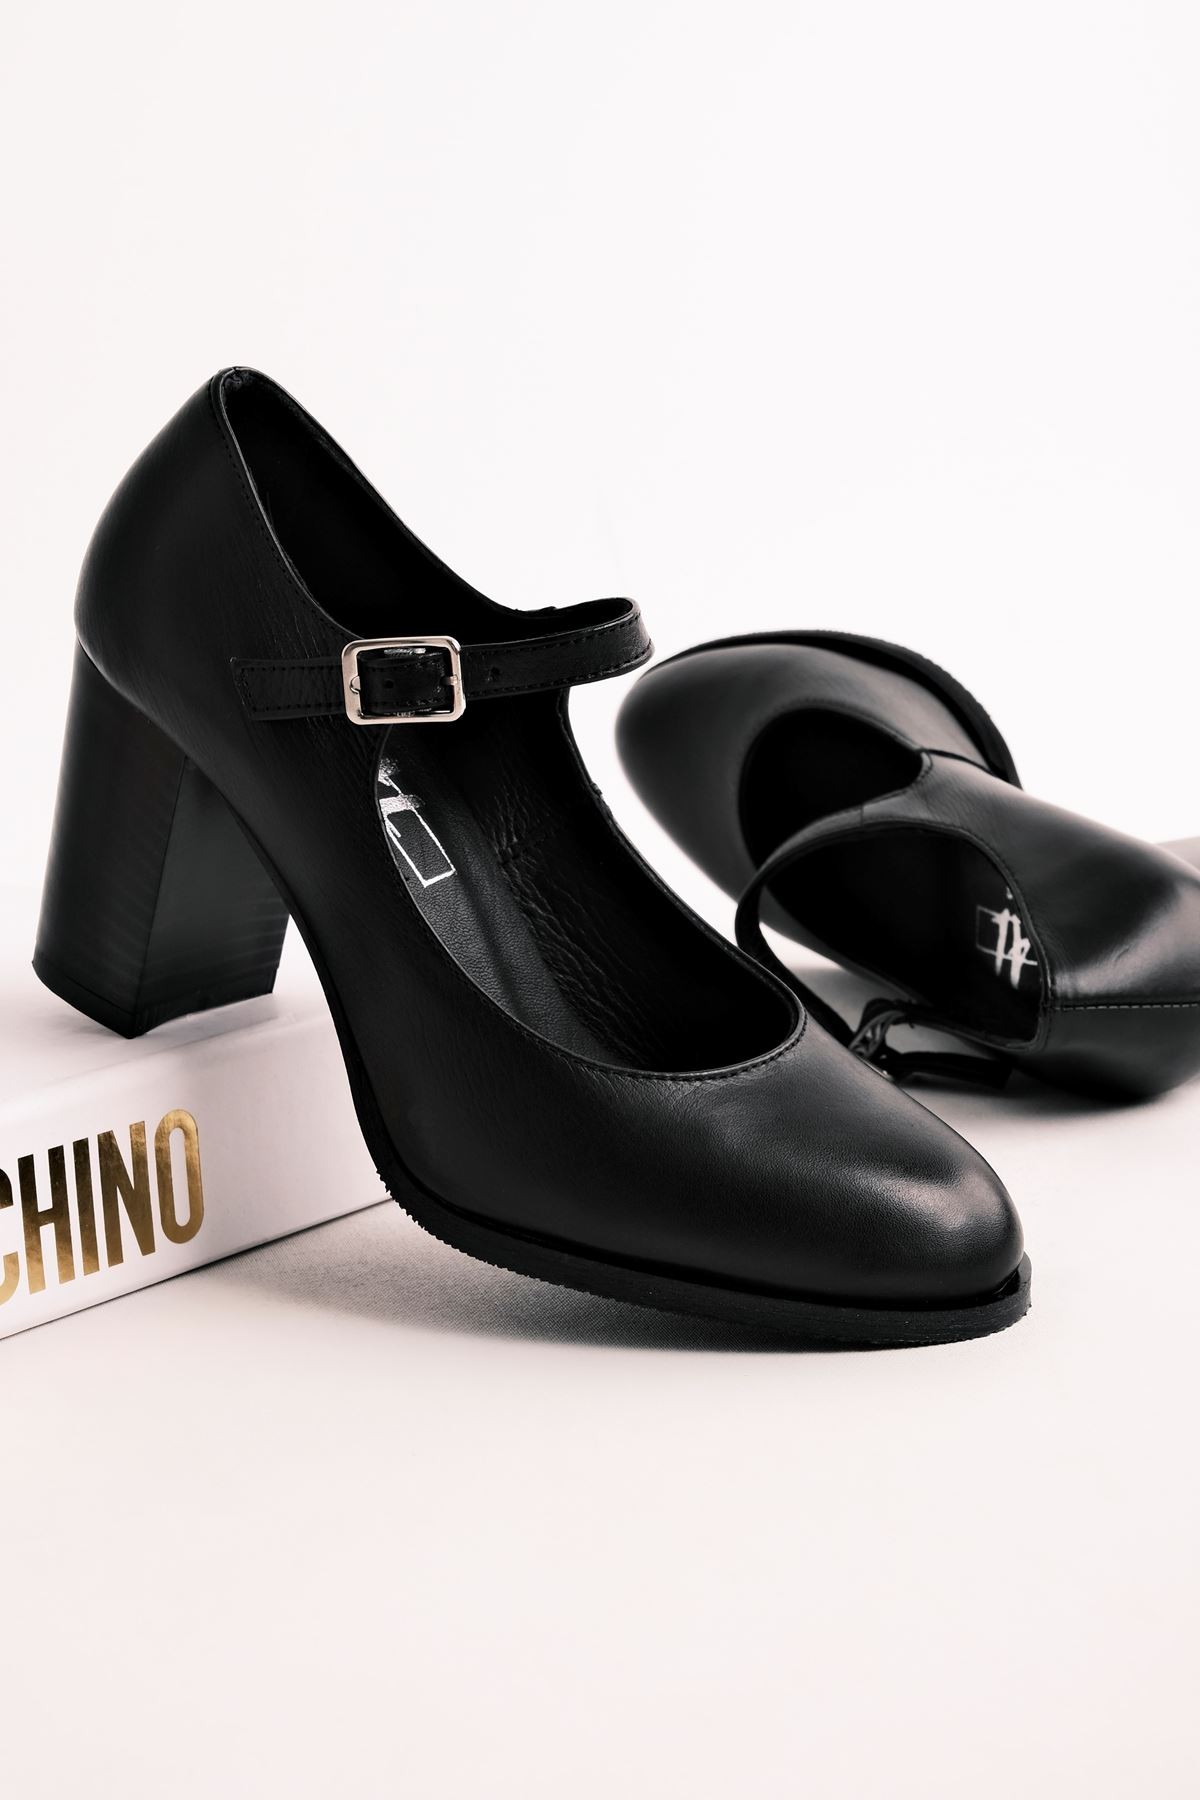 Sharoy Balerin Kadın Hakiki Deri Topuklu Ayakkabı- B2775 - Siyah